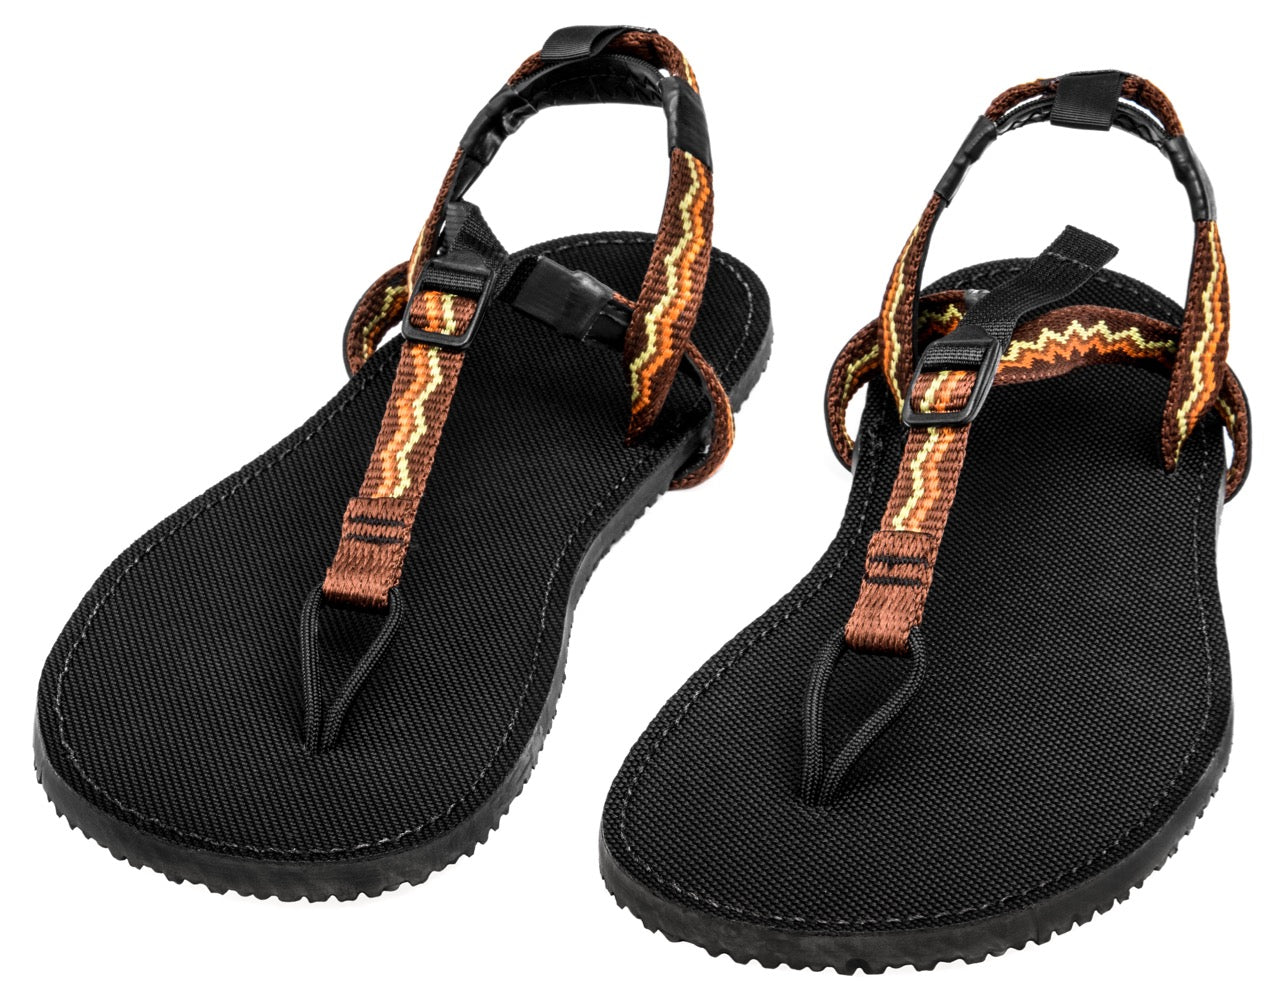 Classic Sandals - Bedrock Sandals